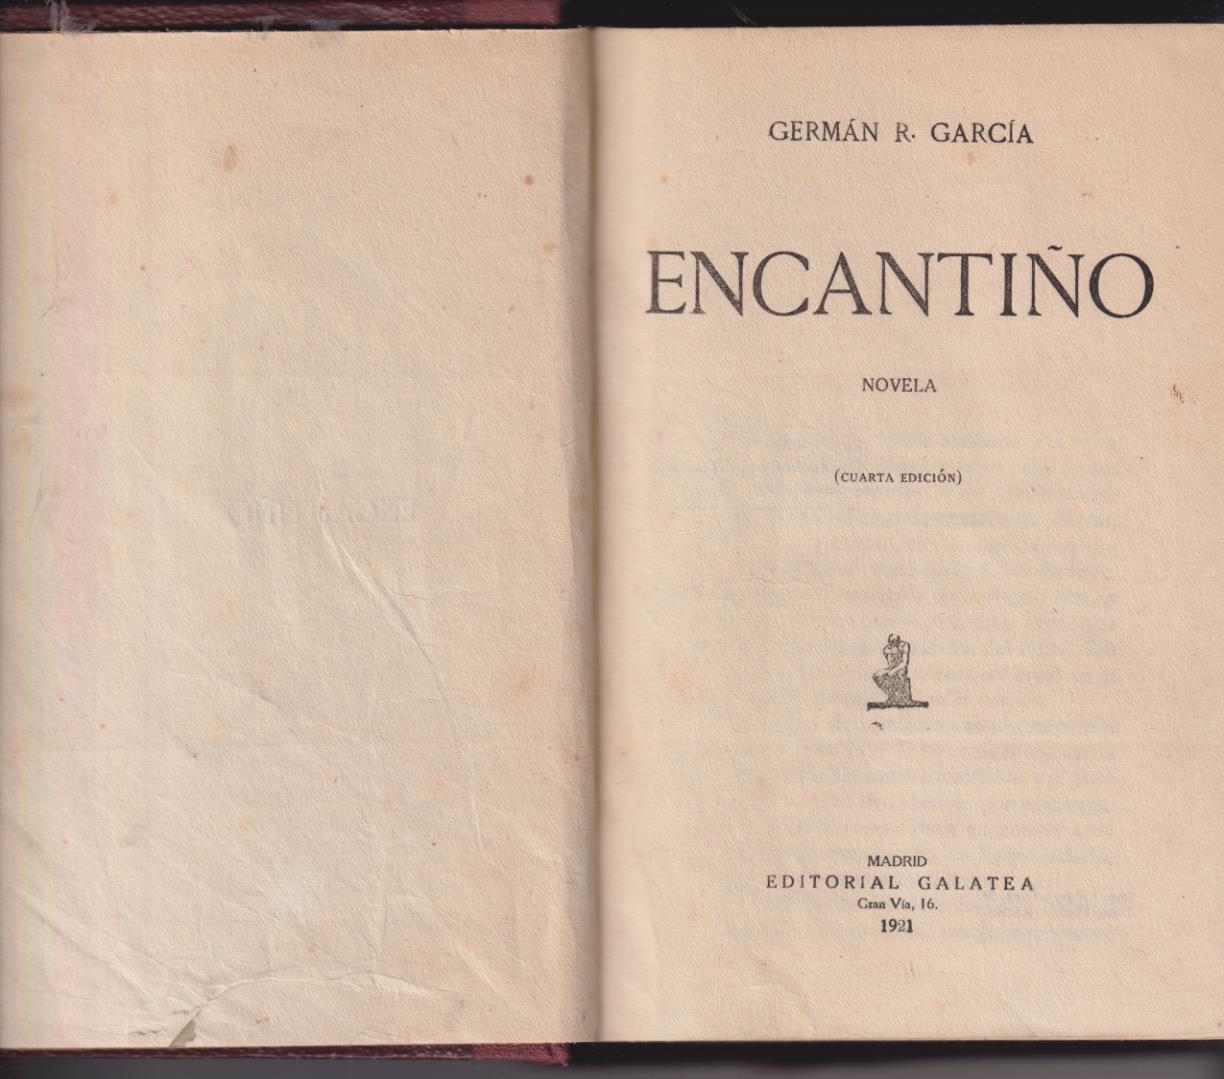 Germán R. García. Encantiño. Editorial Galatea 1921